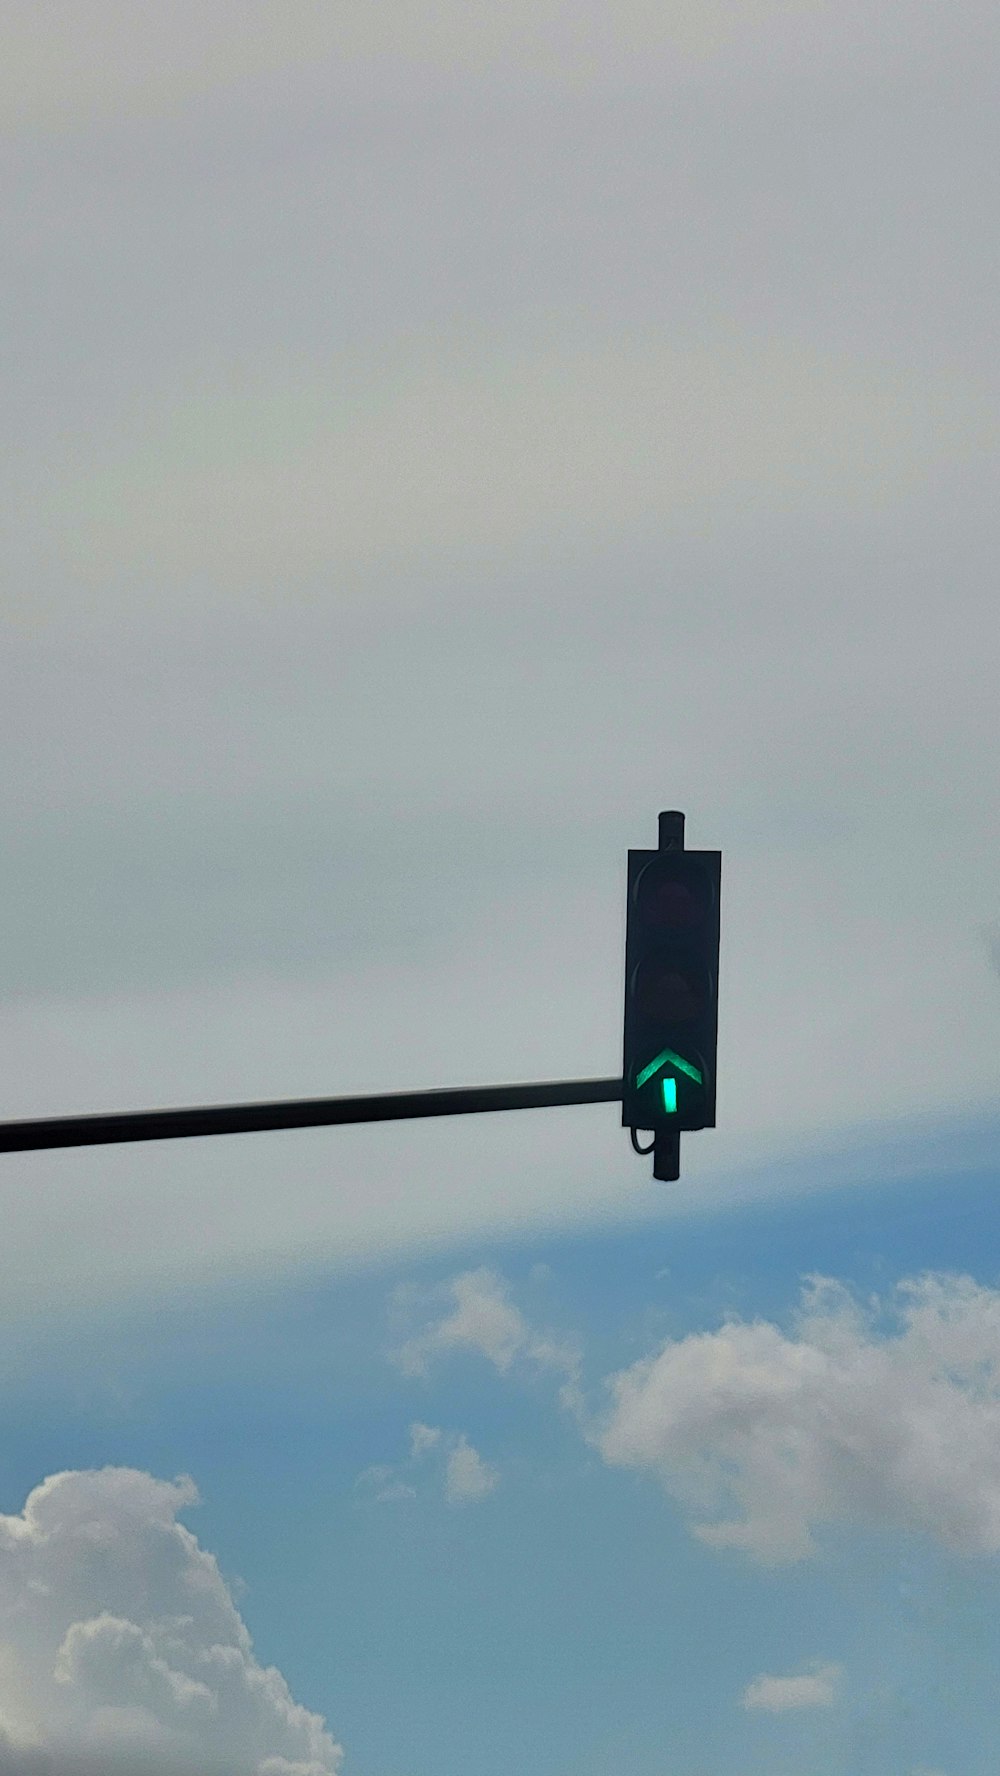 緑色の矢印が付いた信号機